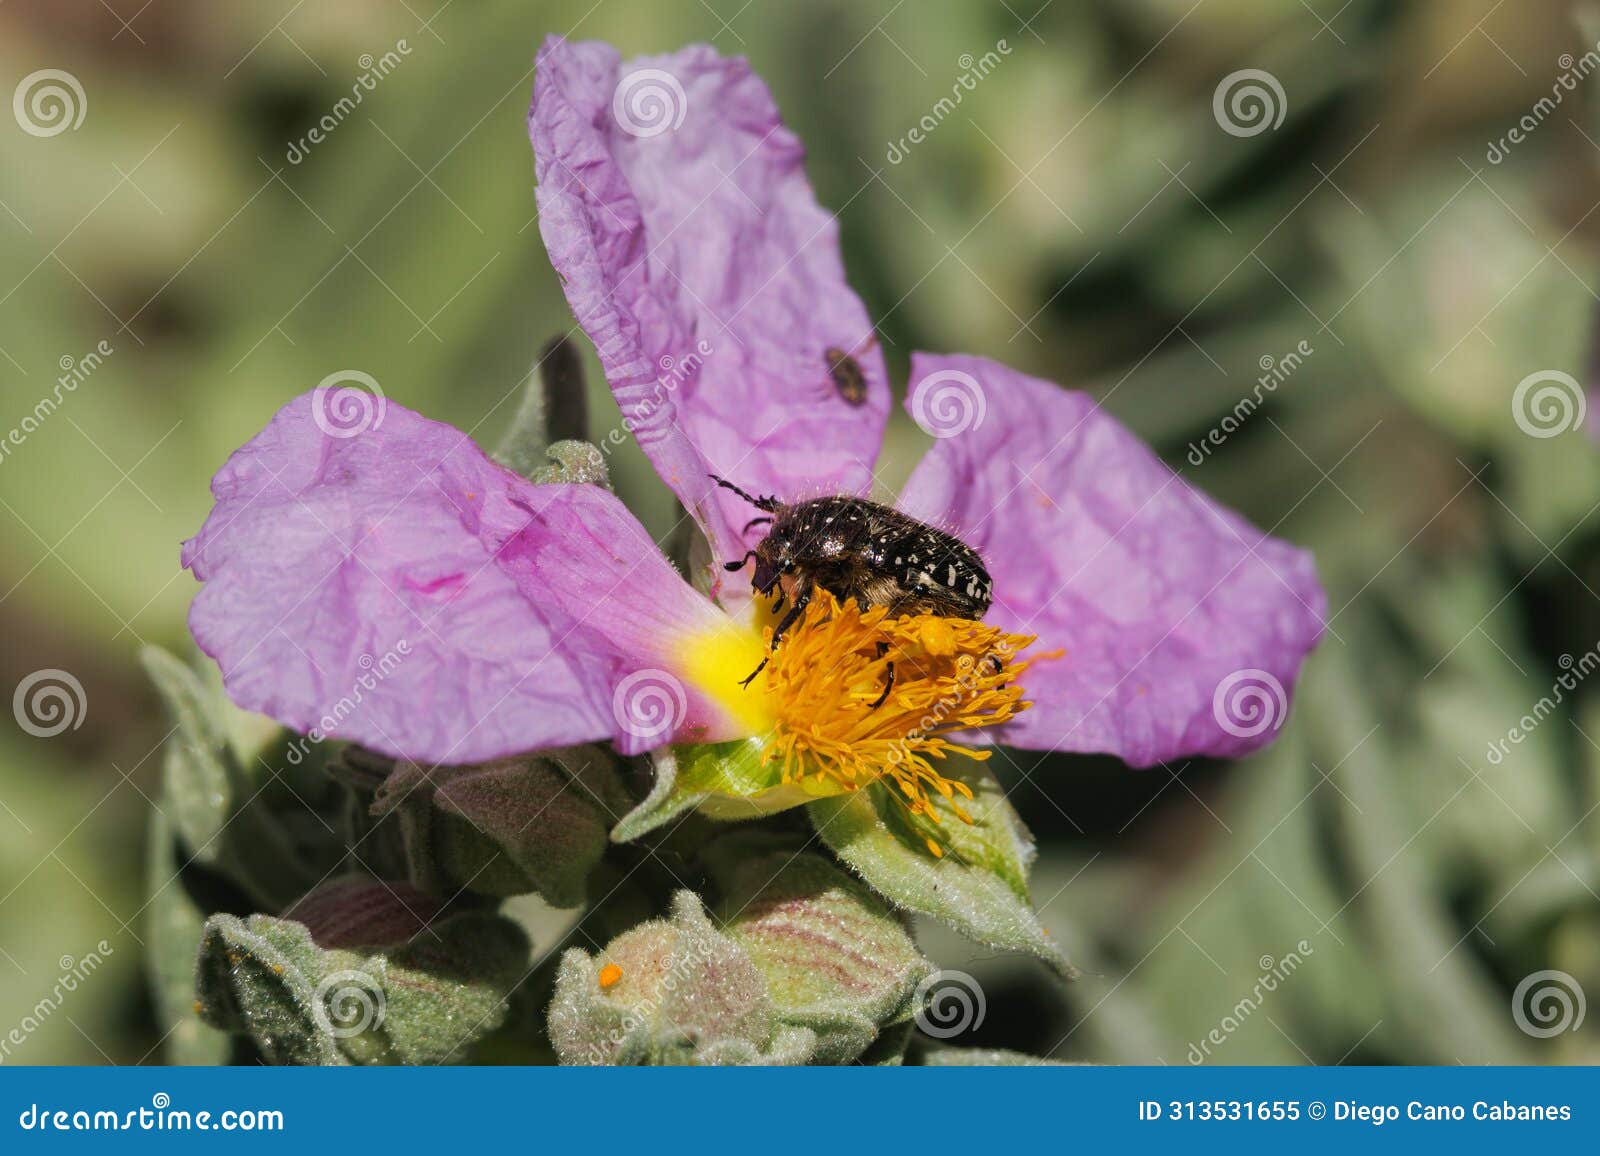 beetle oxythyrea funesta on cistus albidus flower in the preventorium of alcoy